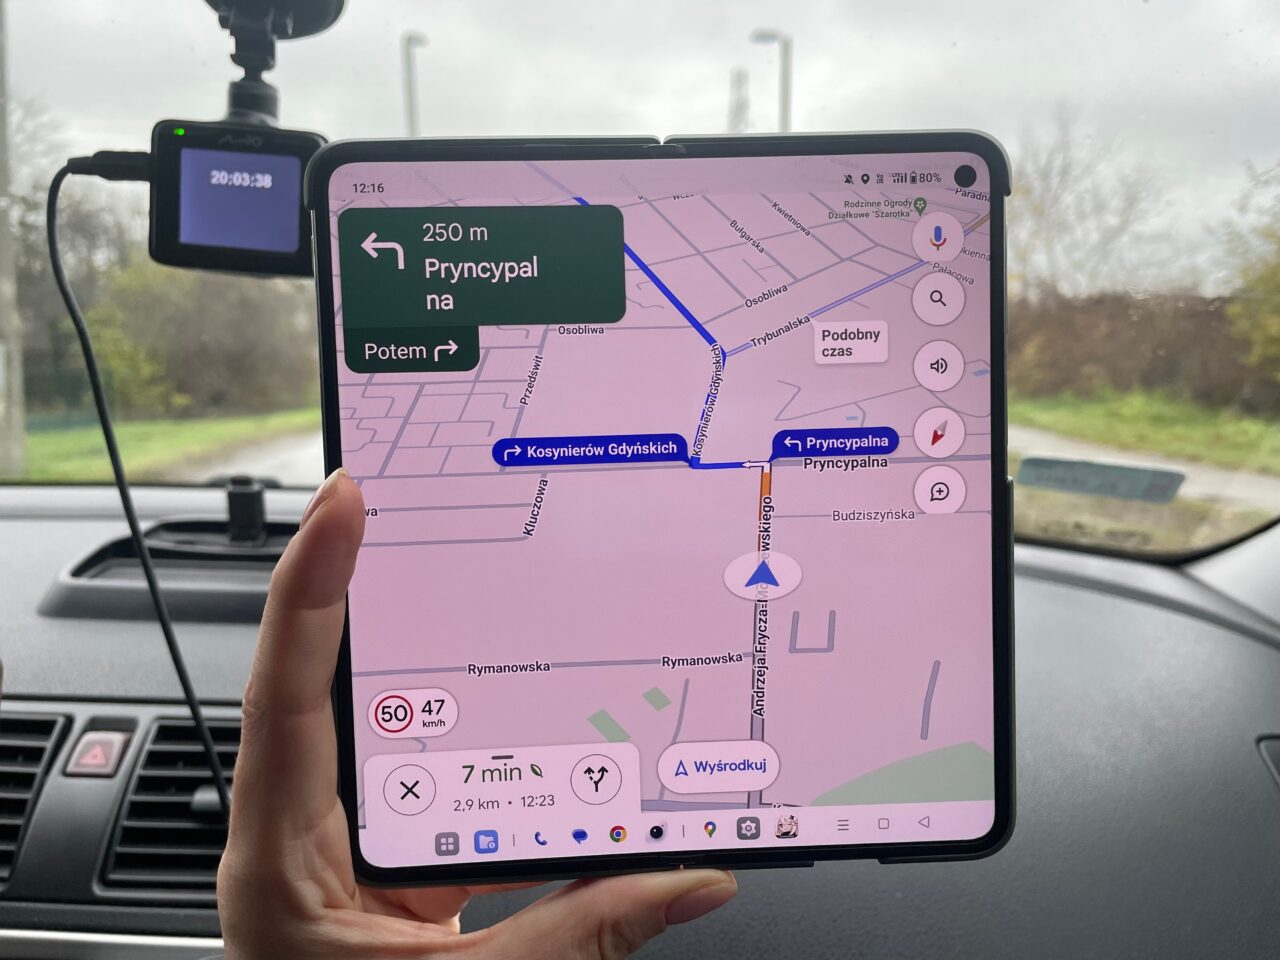 Osoba trzymająca telefon z włączoną aplikacją nawigacyjną wewnątrz samochodu. Na tablet pokazano mapę z trasą i wskazówkami dojazdu. recenzja oneplus open